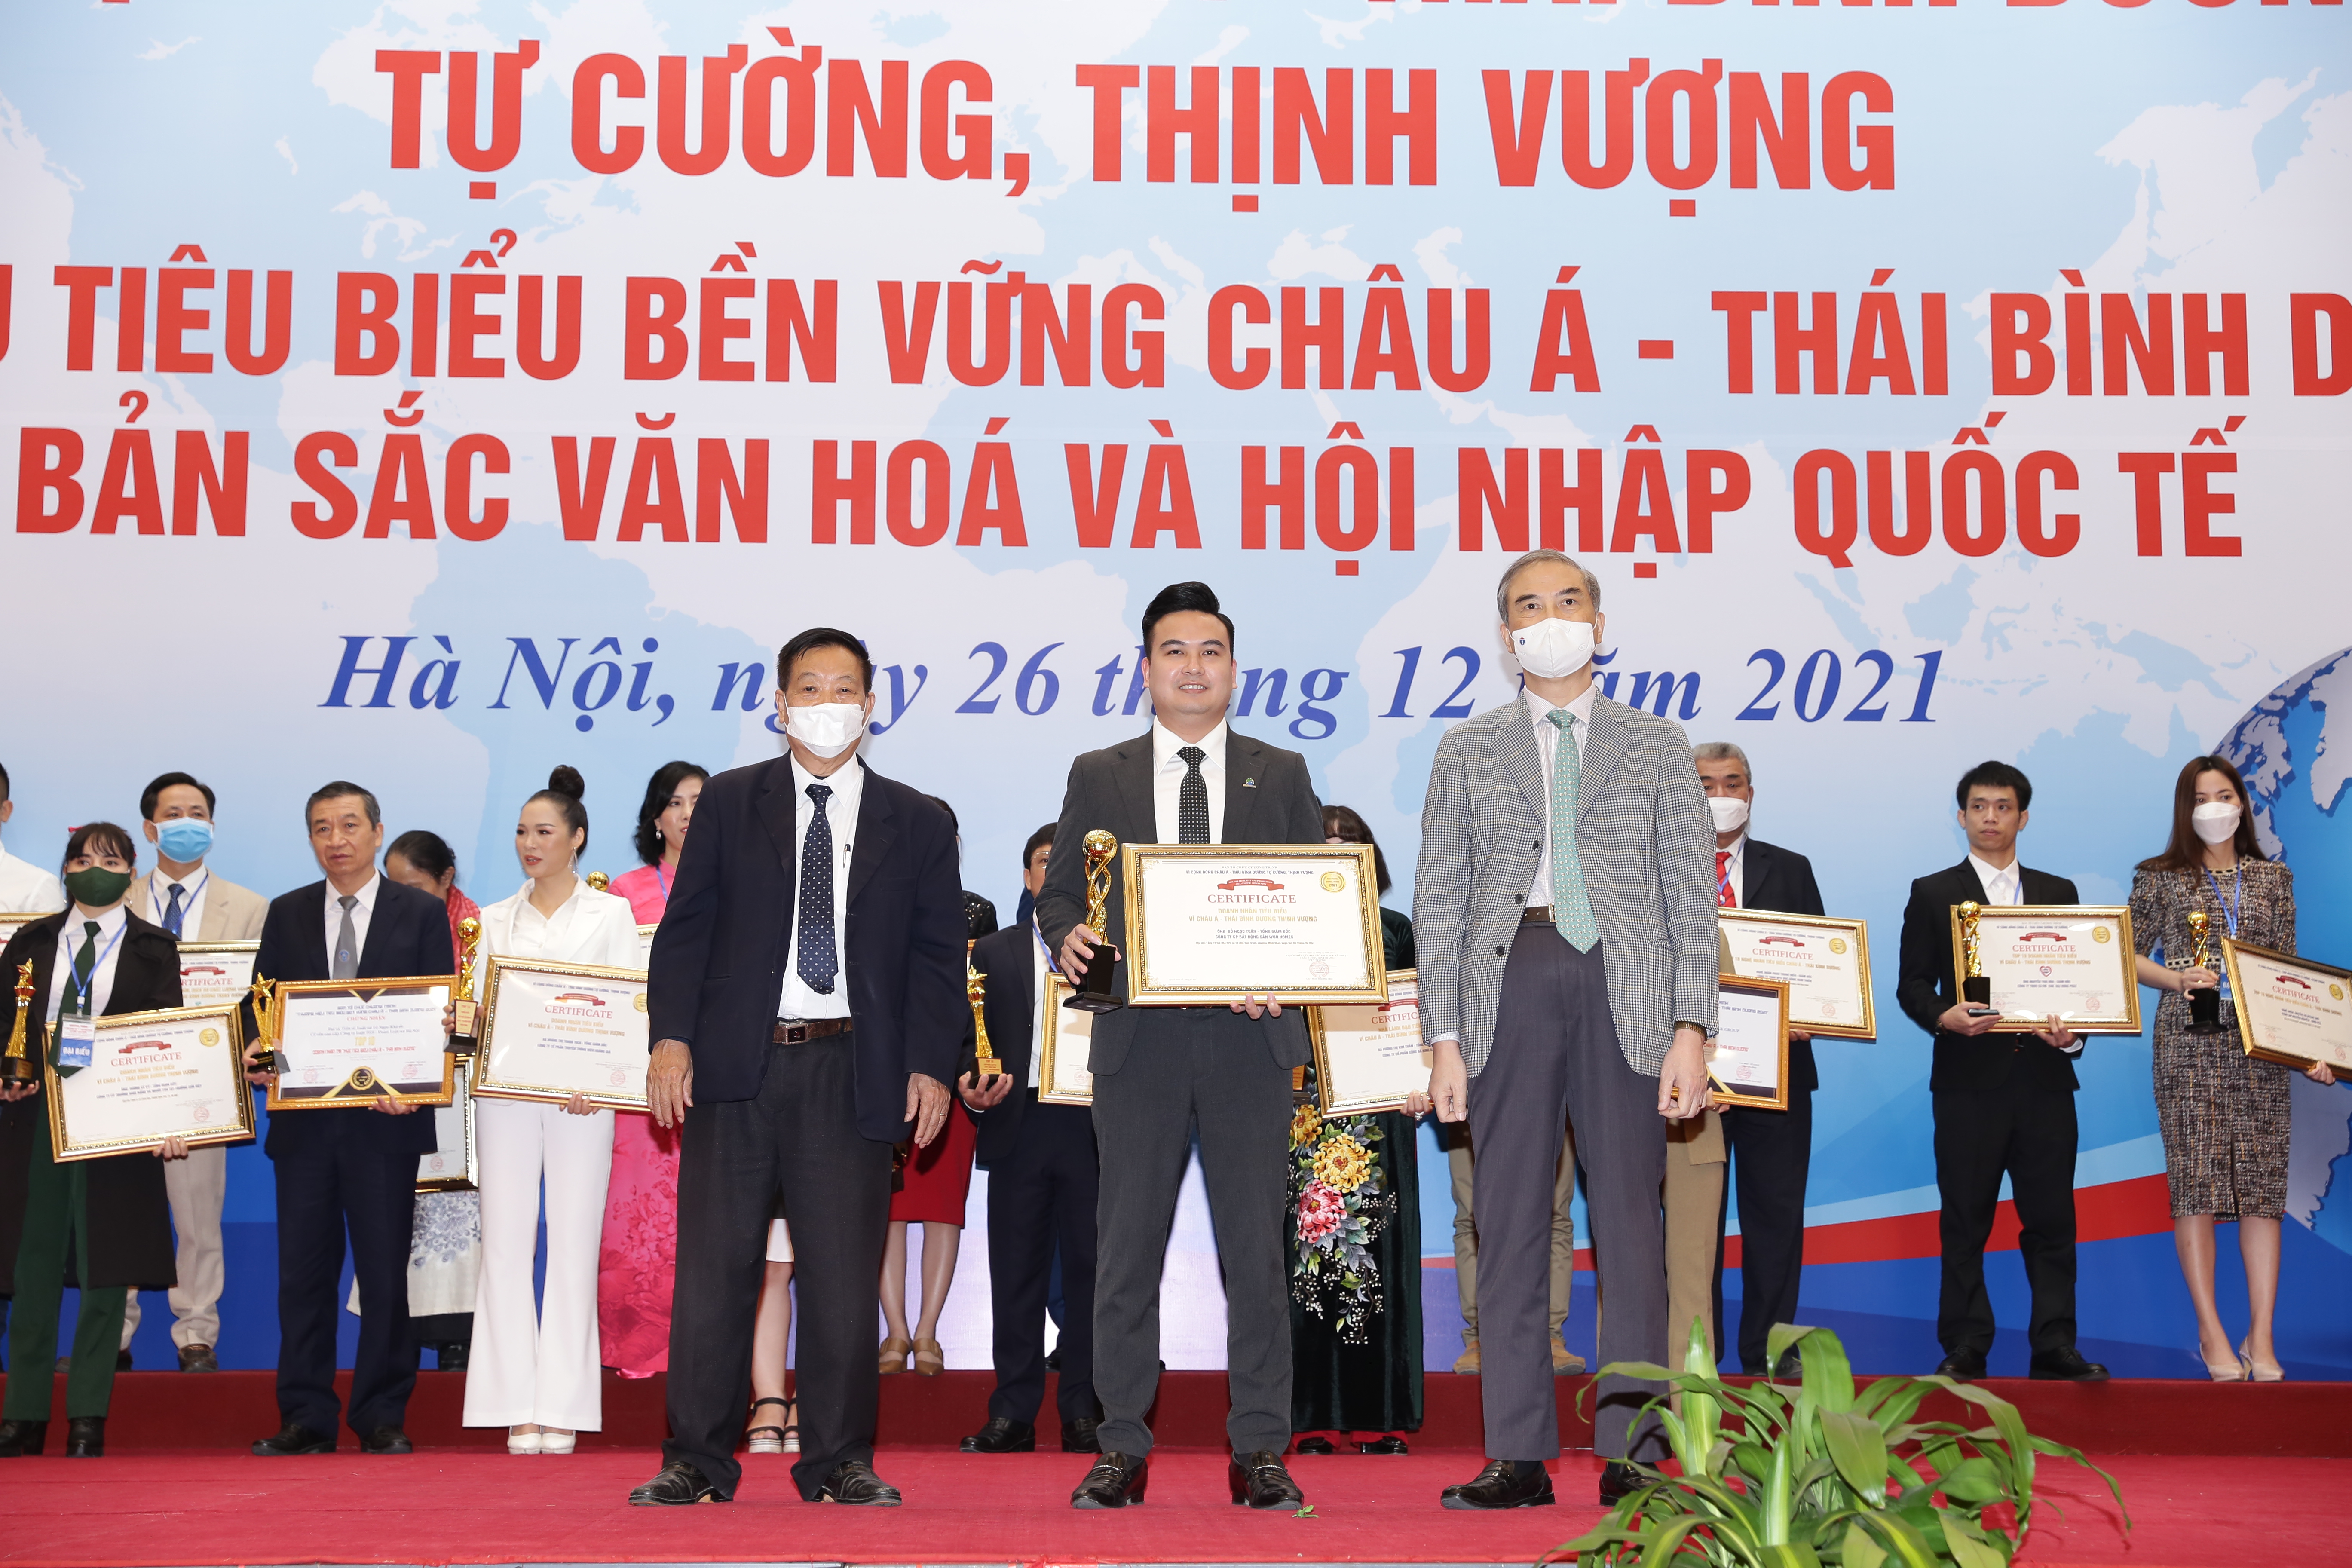 Ông Đỗ Ngọc Tuấn - Chủ Tịch Won Homes được xướng tên lên nhận giải